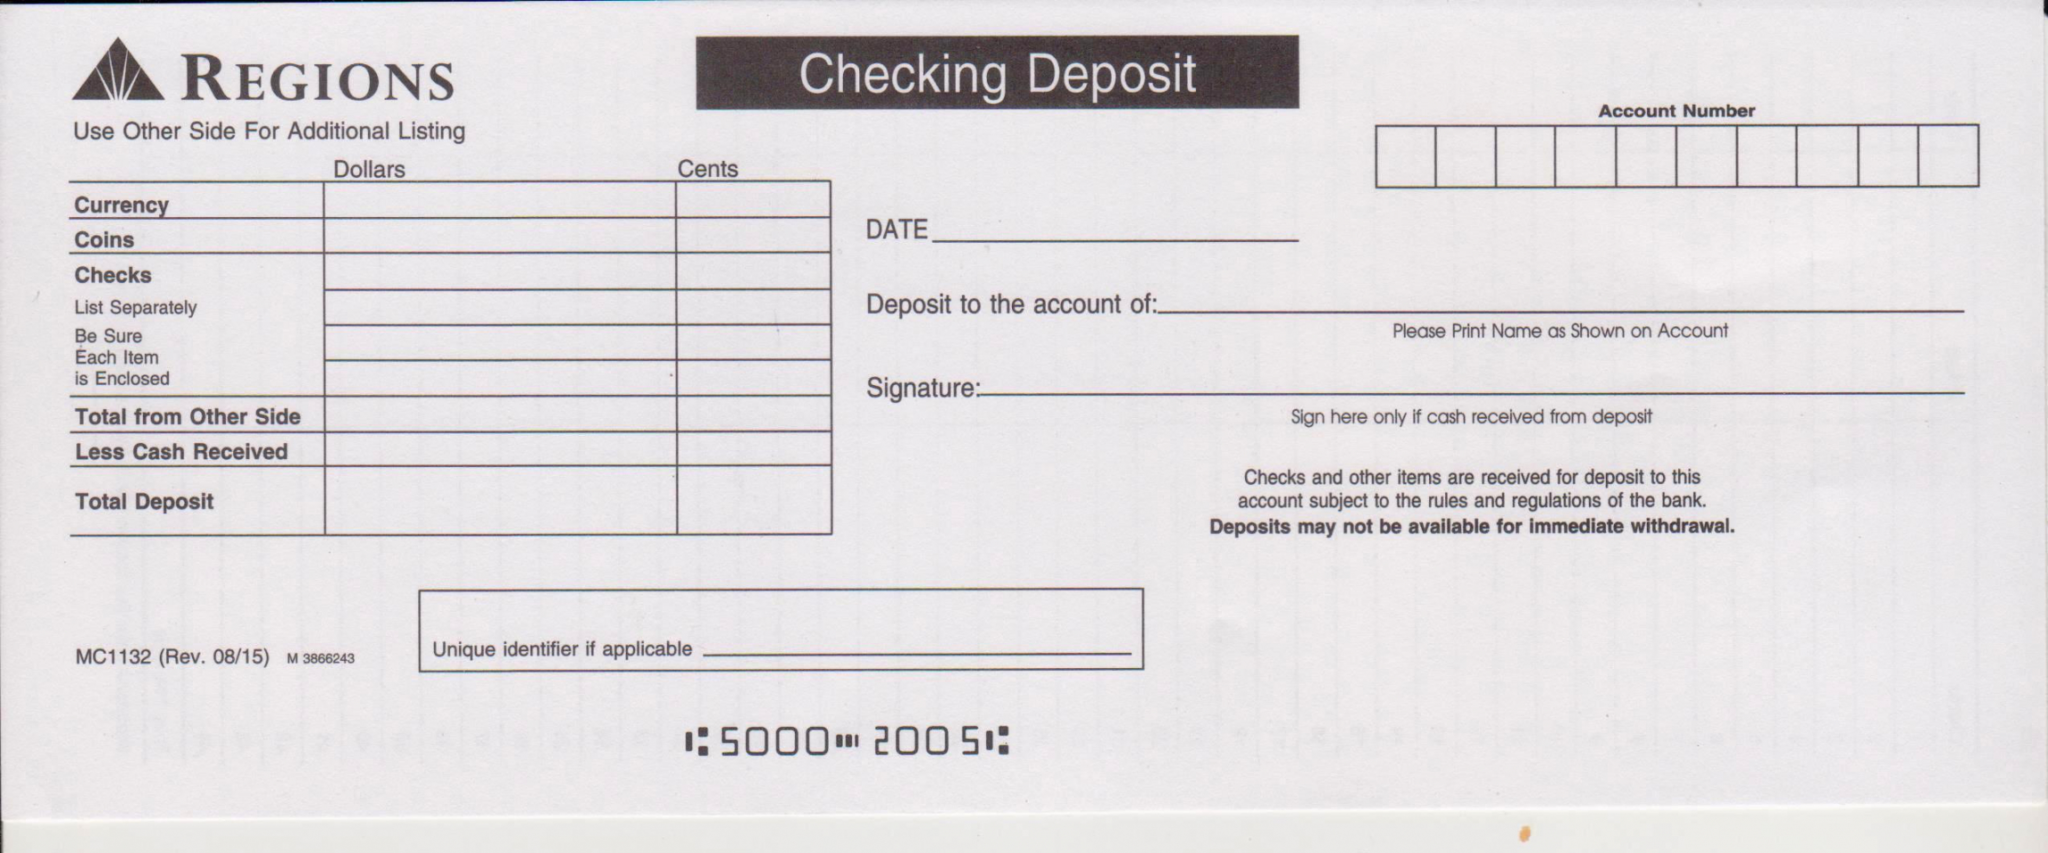 printable-regions-bank-deposit-slip-free-printable-template-cash-deposit-slip-template-word